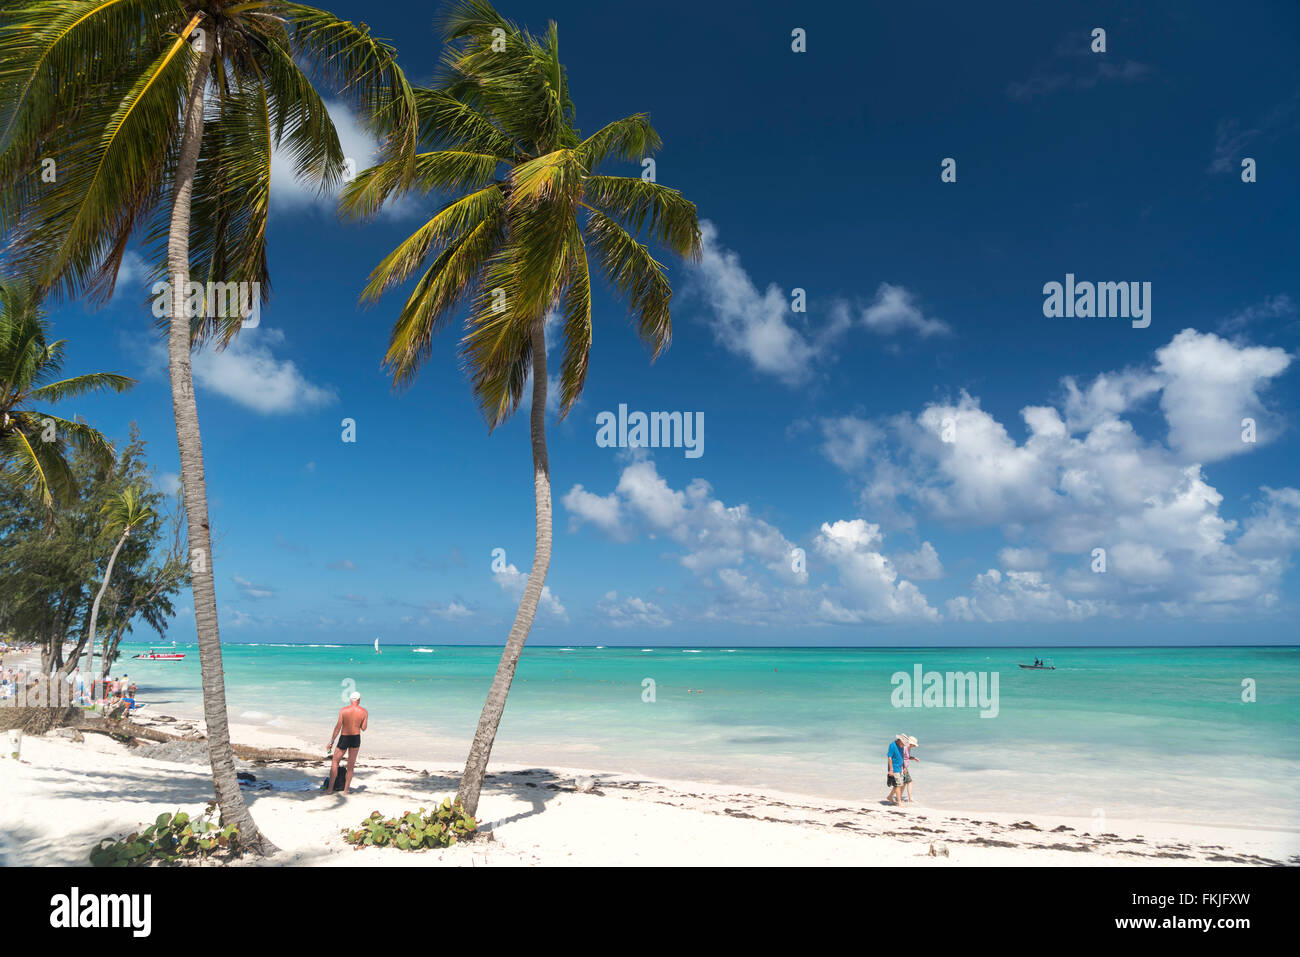 Plage de sable fin bordée de palmiers de Playa Bavaro, Punta Cana, République dominicaine, Caraïbes, Amérique Latine, Banque D'Images